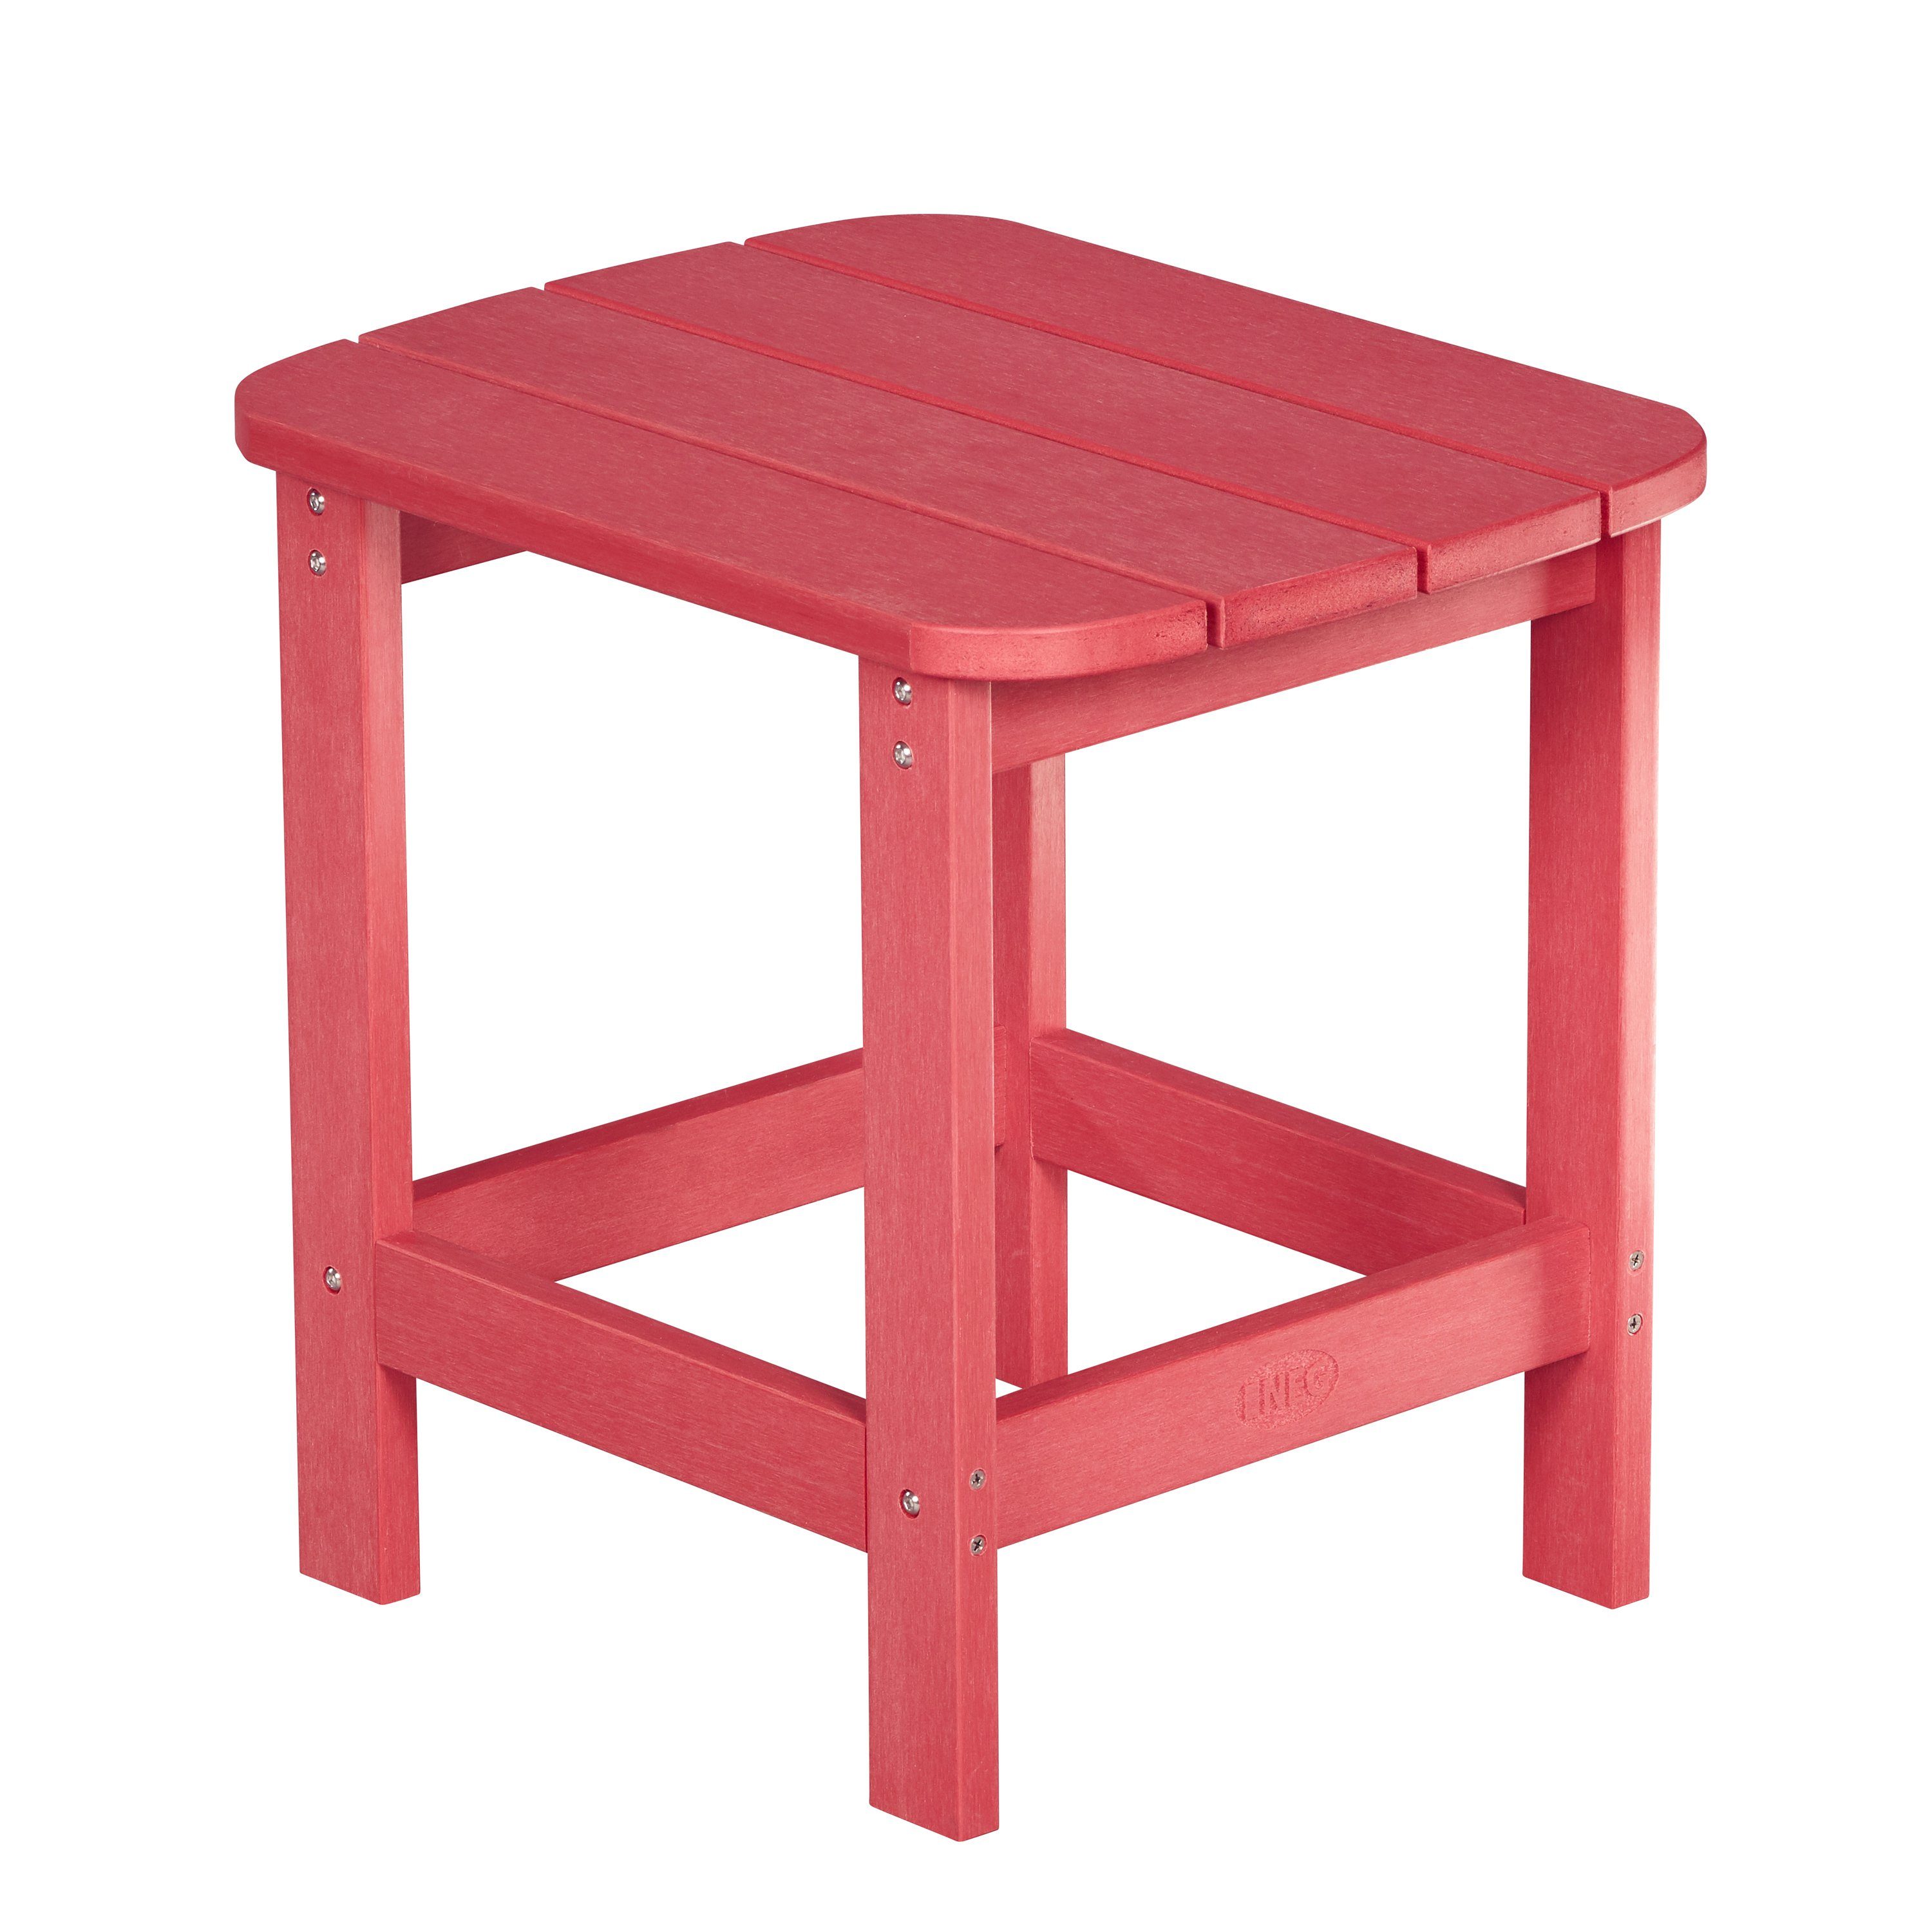 MARCY NEG rot Gartenstuhl NEG Tisch/Beistelltisch Adirondack